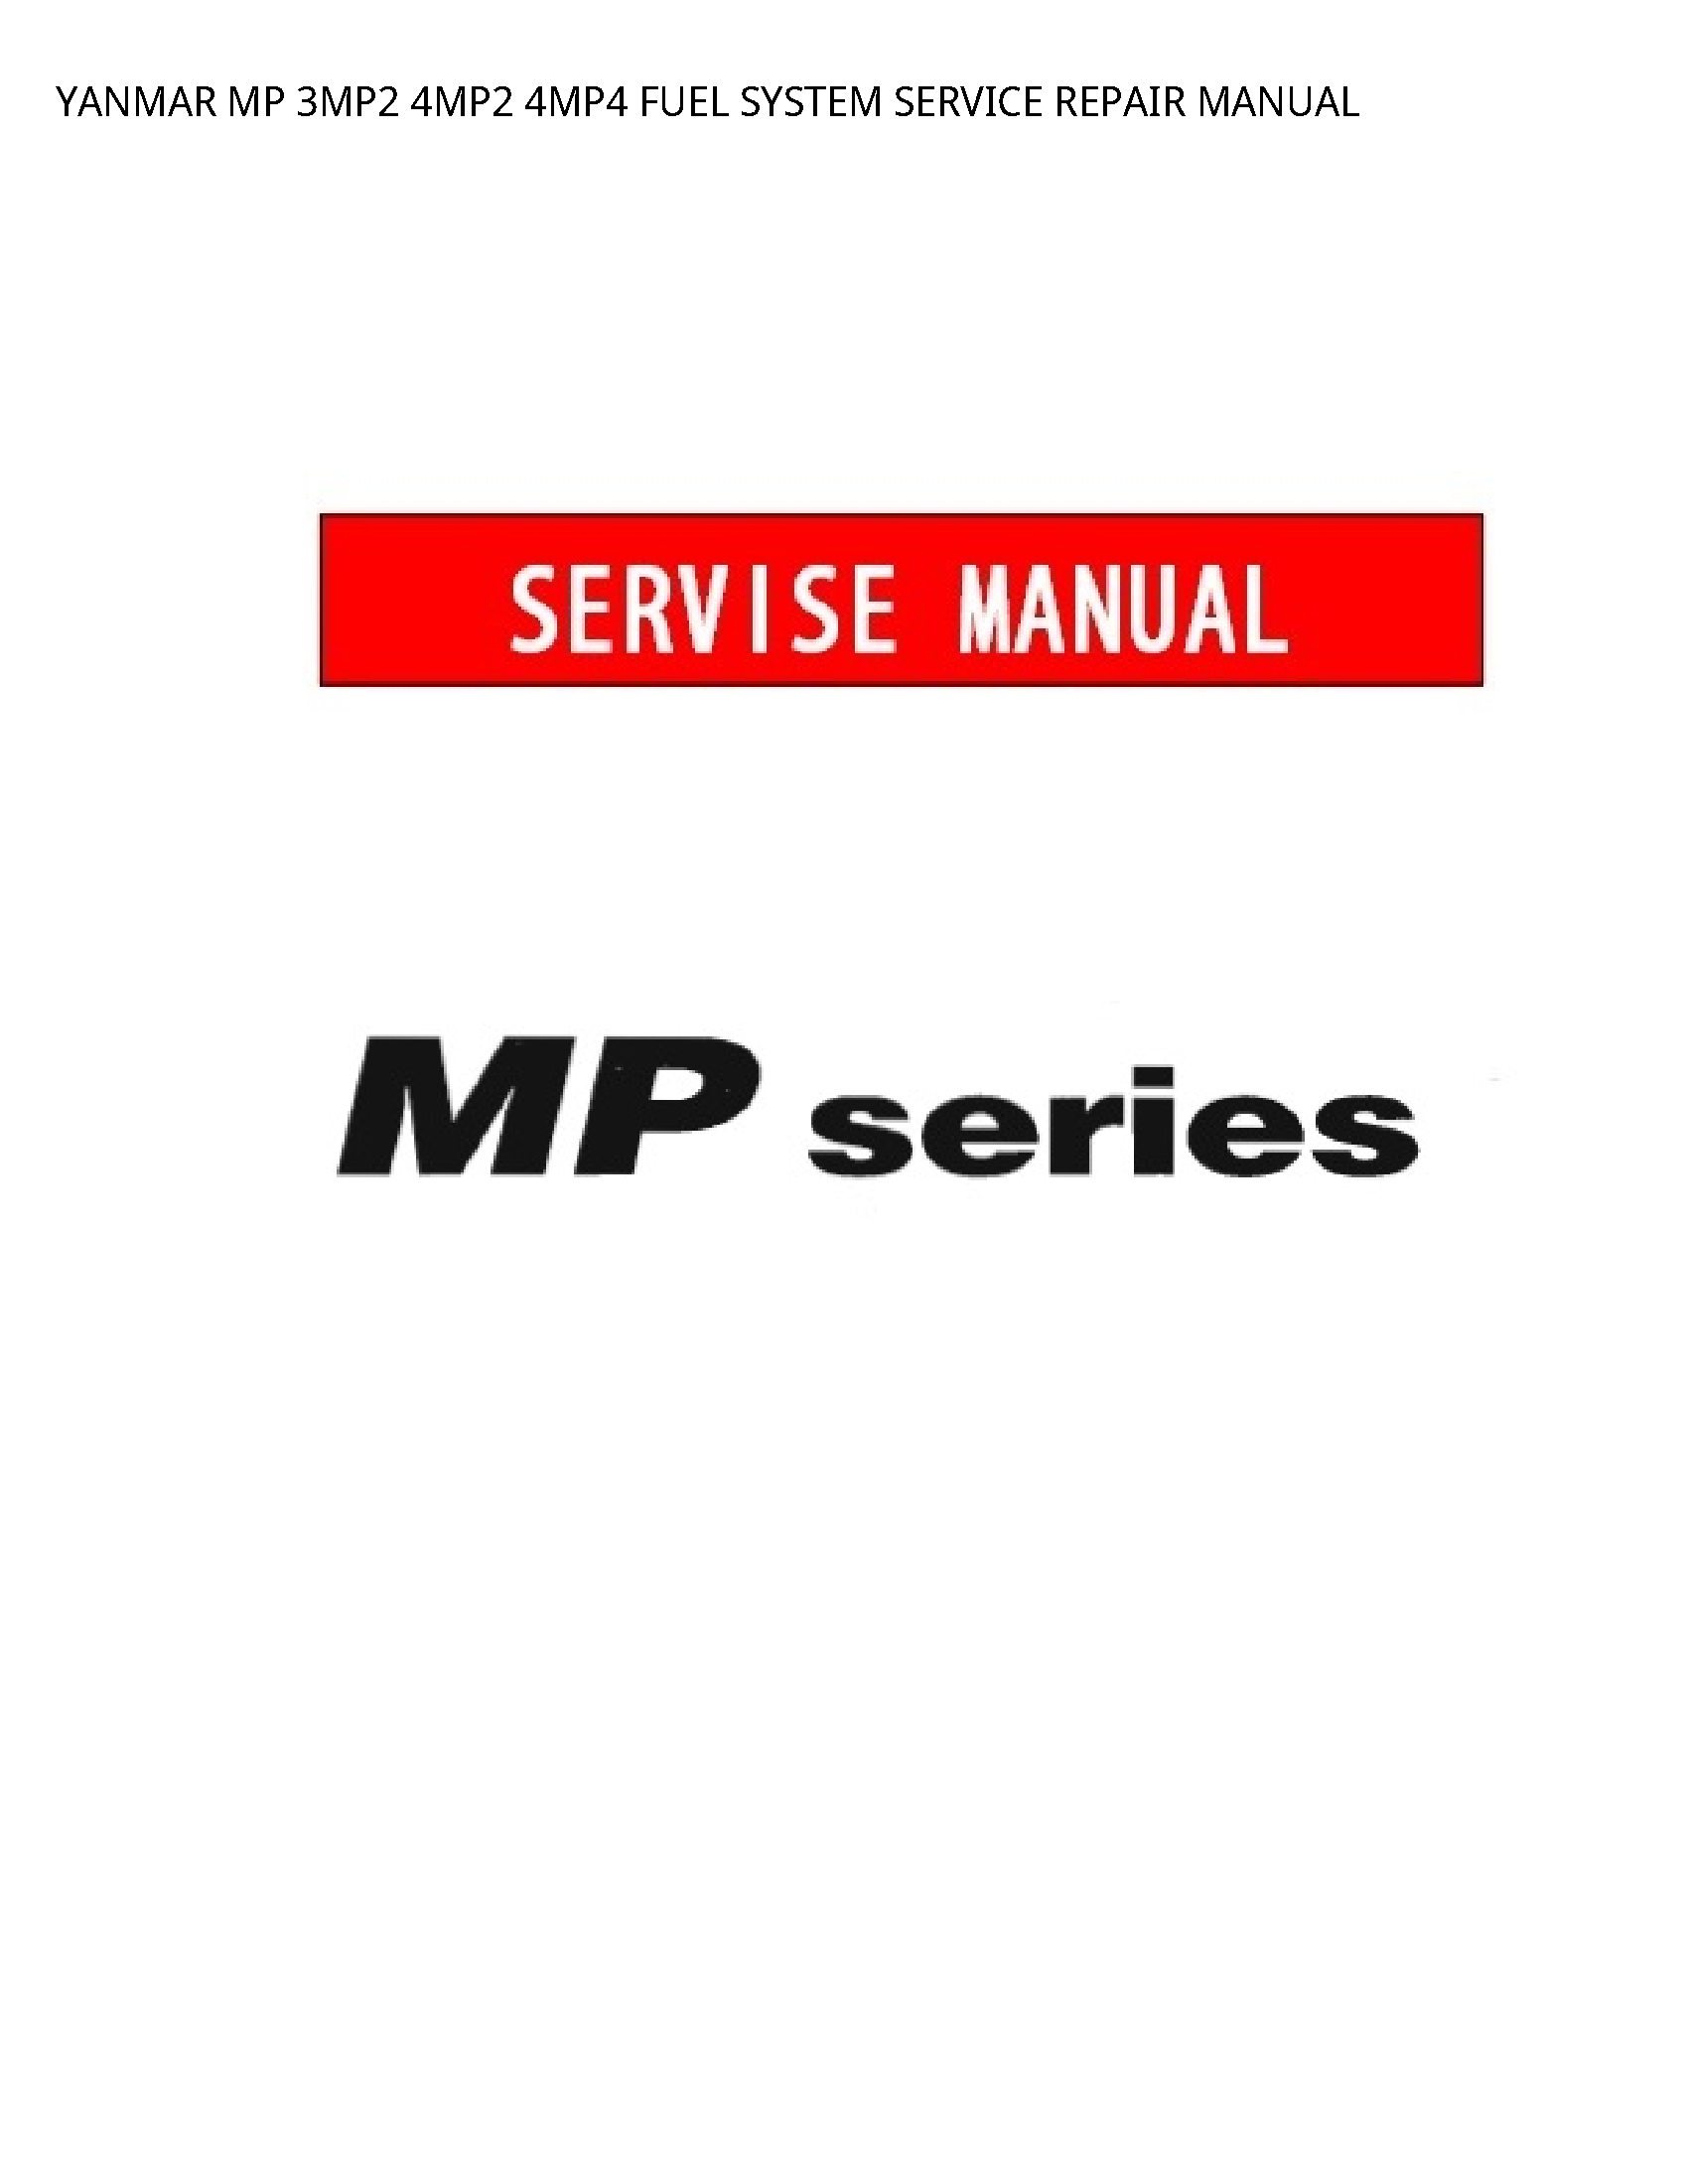 Yanmar 3MP2 MP FUEL SYSTEM SERVICE REPAIR manual